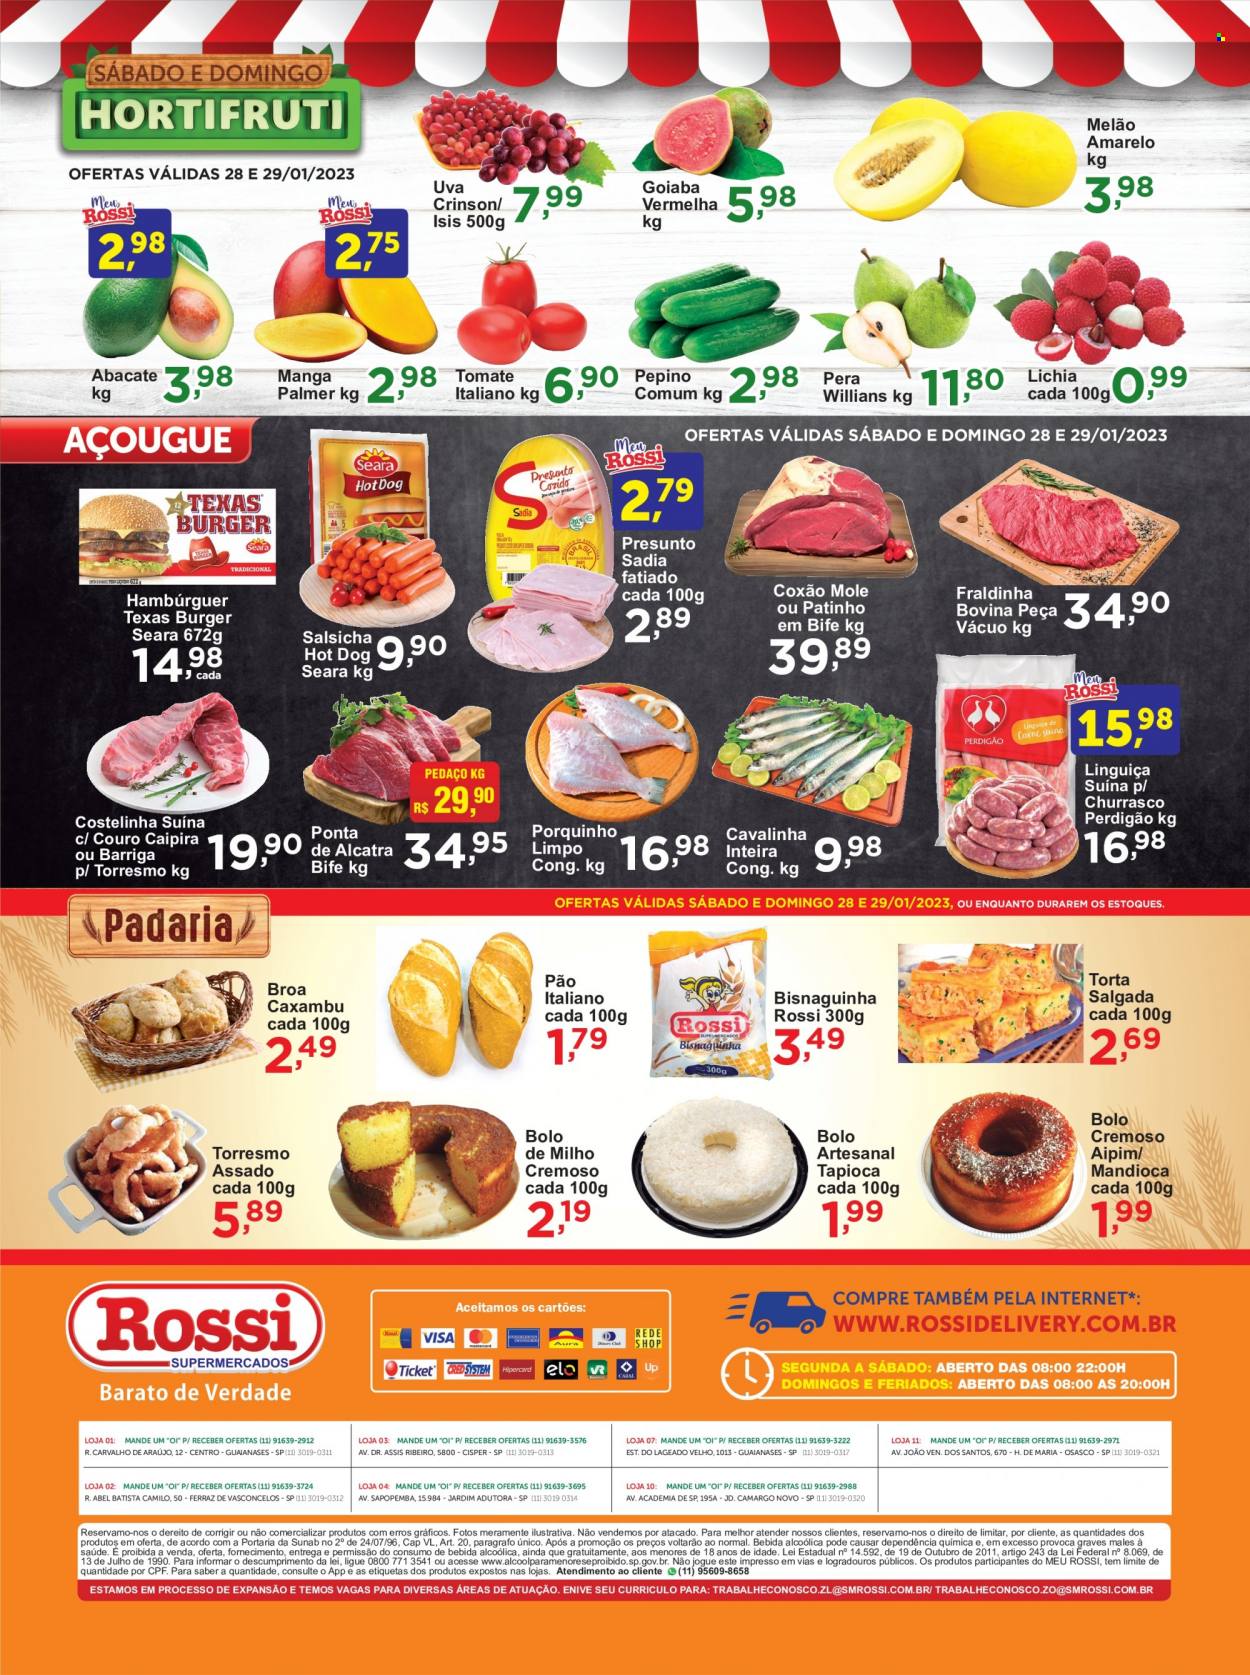 Encarte Rossi Supermercados  - 28.01.2023 - 29.01.2023.